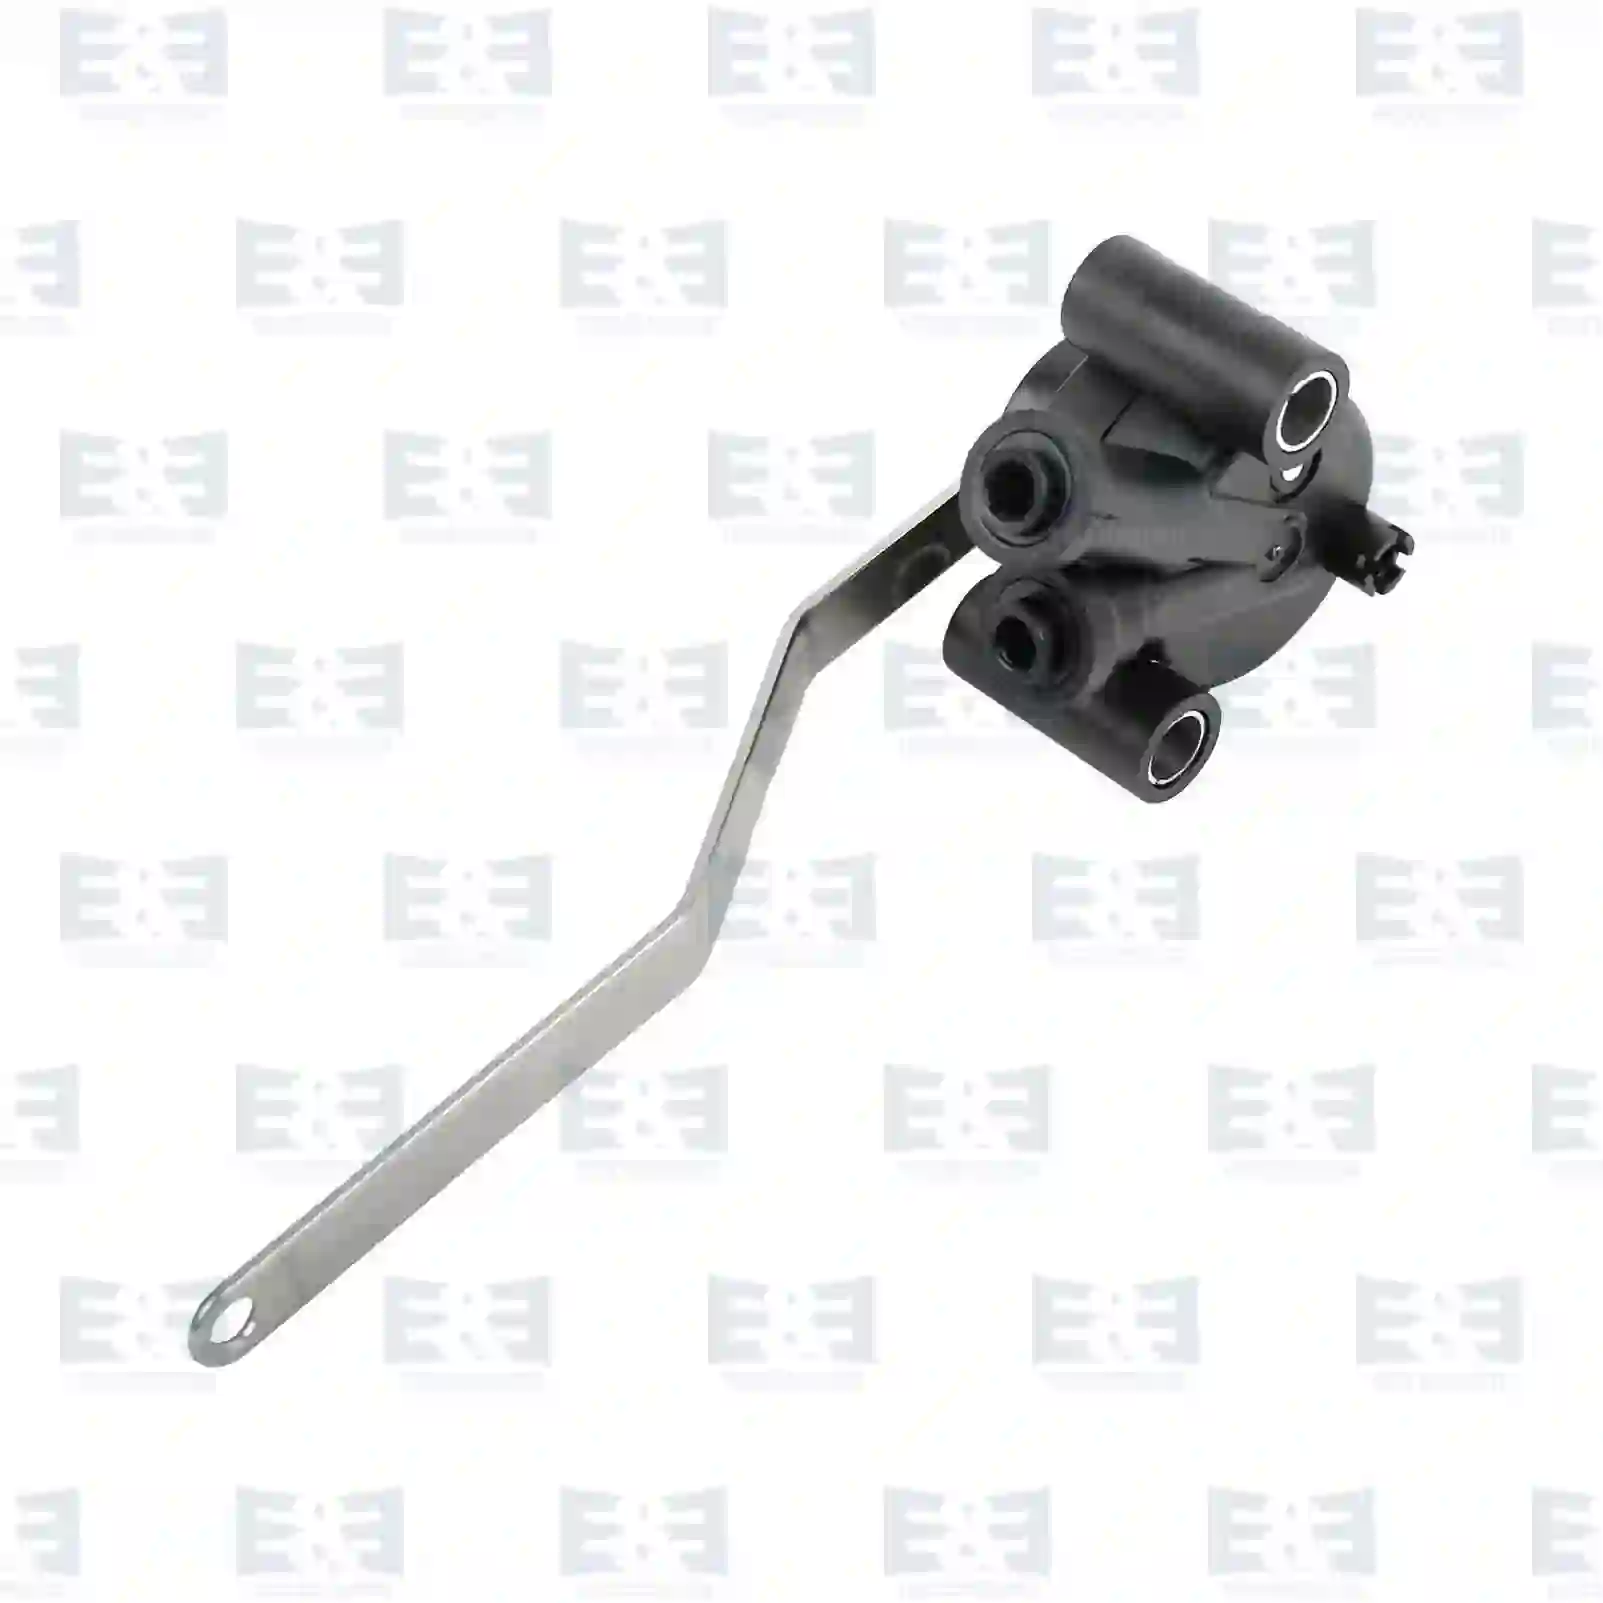  Level valve || E&E Truck Spare Parts | Truck Spare Parts, Auotomotive Spare Parts